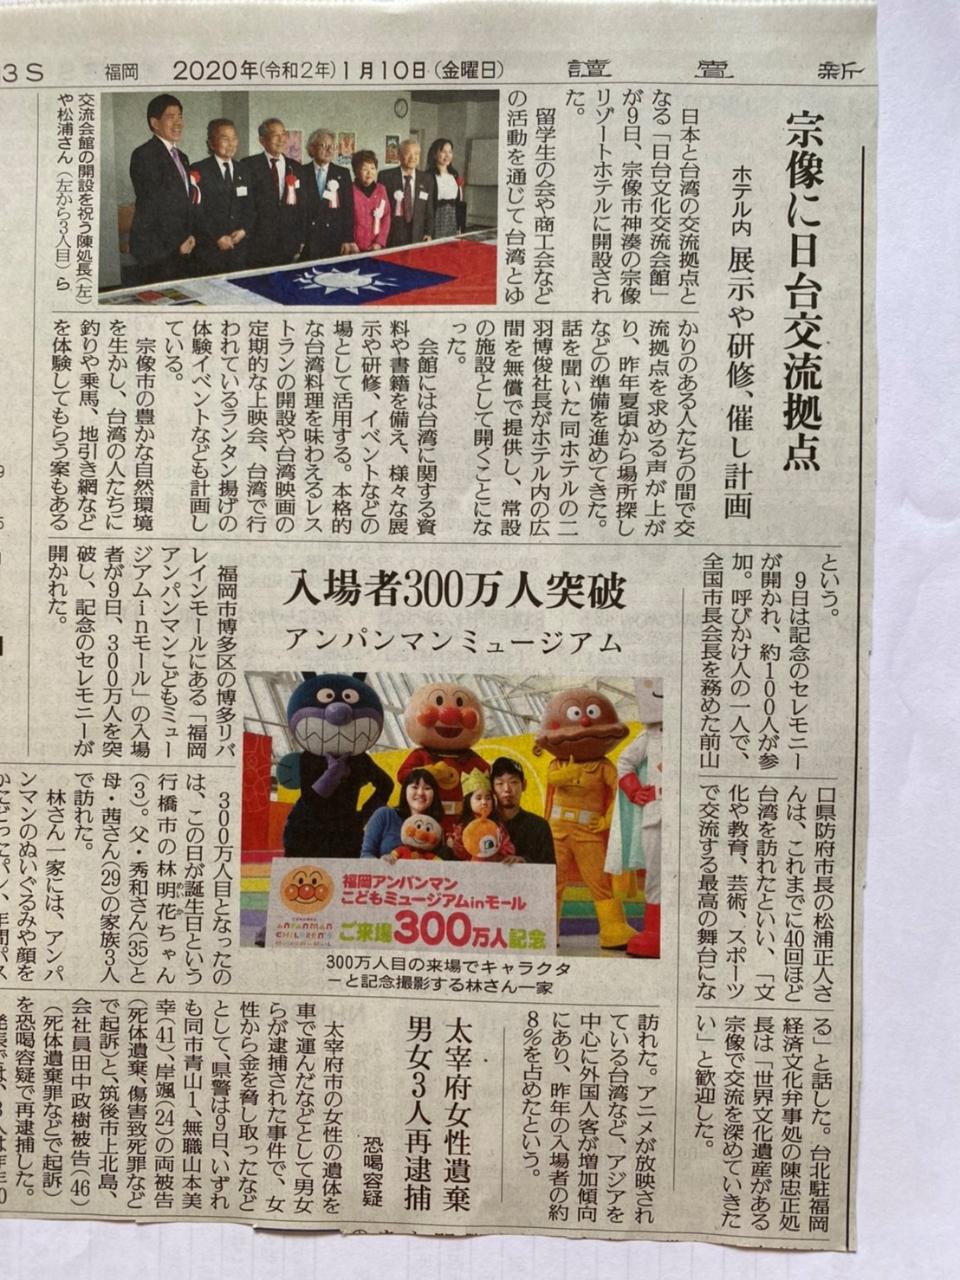 1月10日、読売新聞で「日台文化交流会館開設」報道されました。